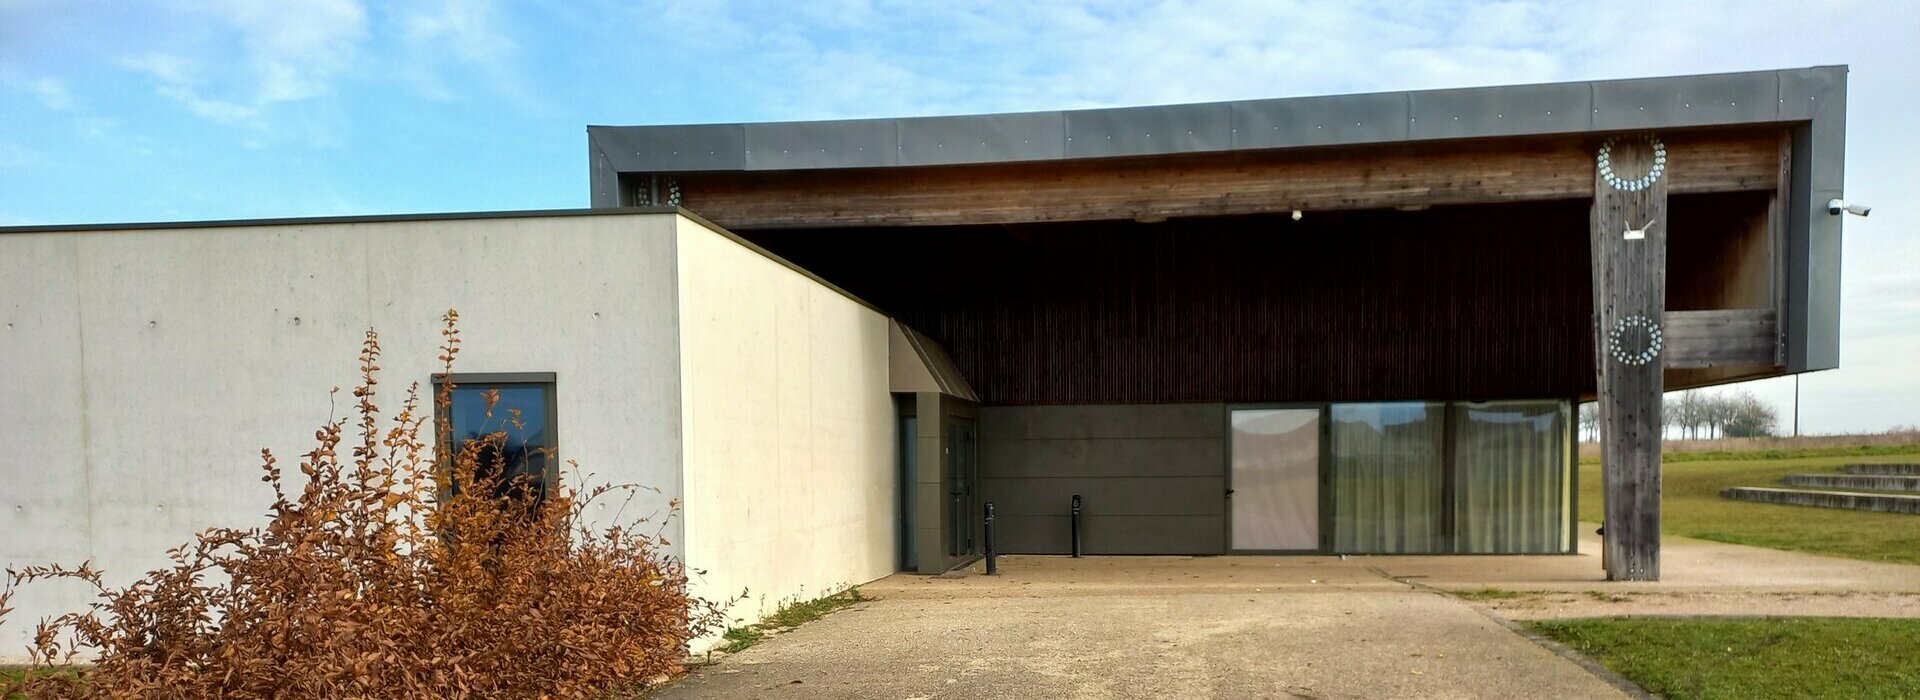 Location des salles Municipales de Tavers, Val de Loire